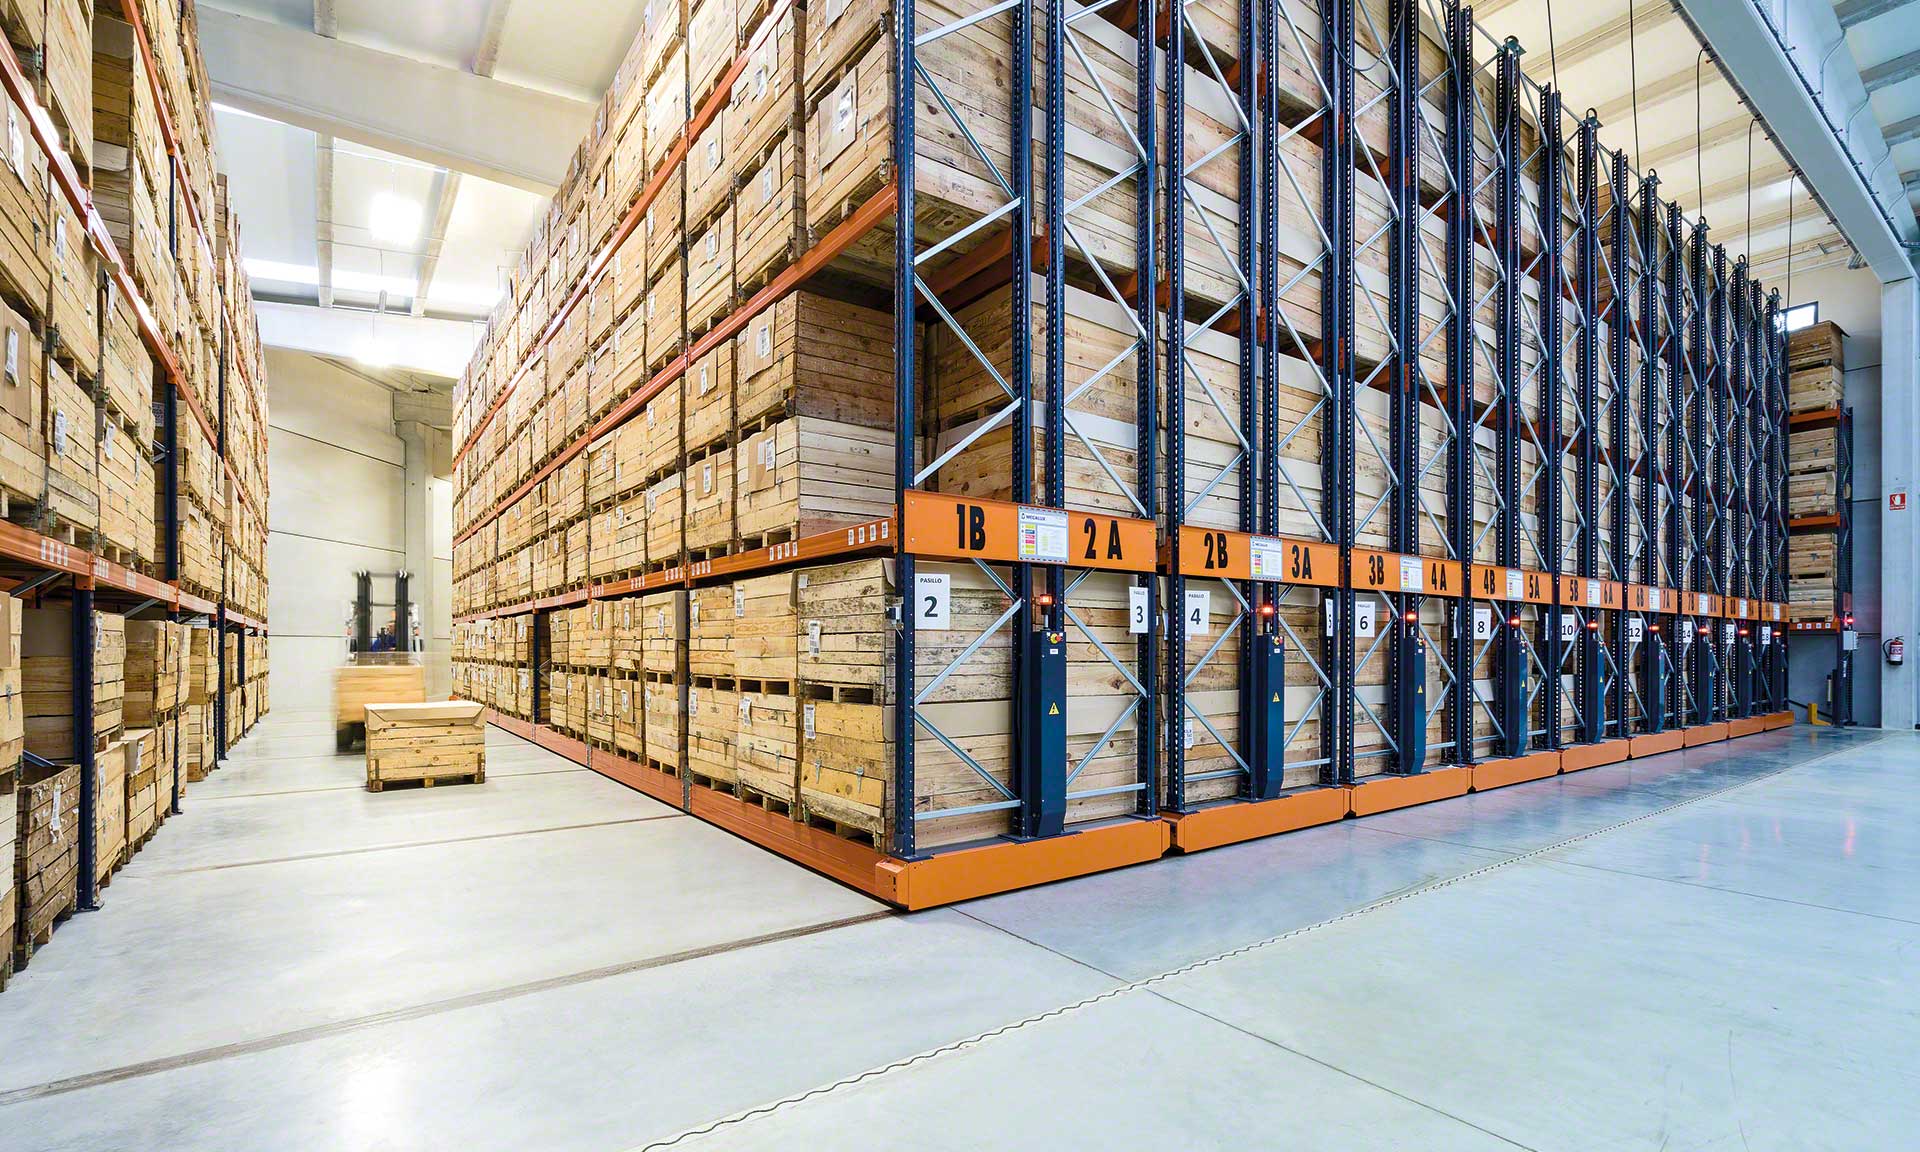 Le stockage haute densité multiplie la capacité de stockage et libère de l'espace dans les entrepôts